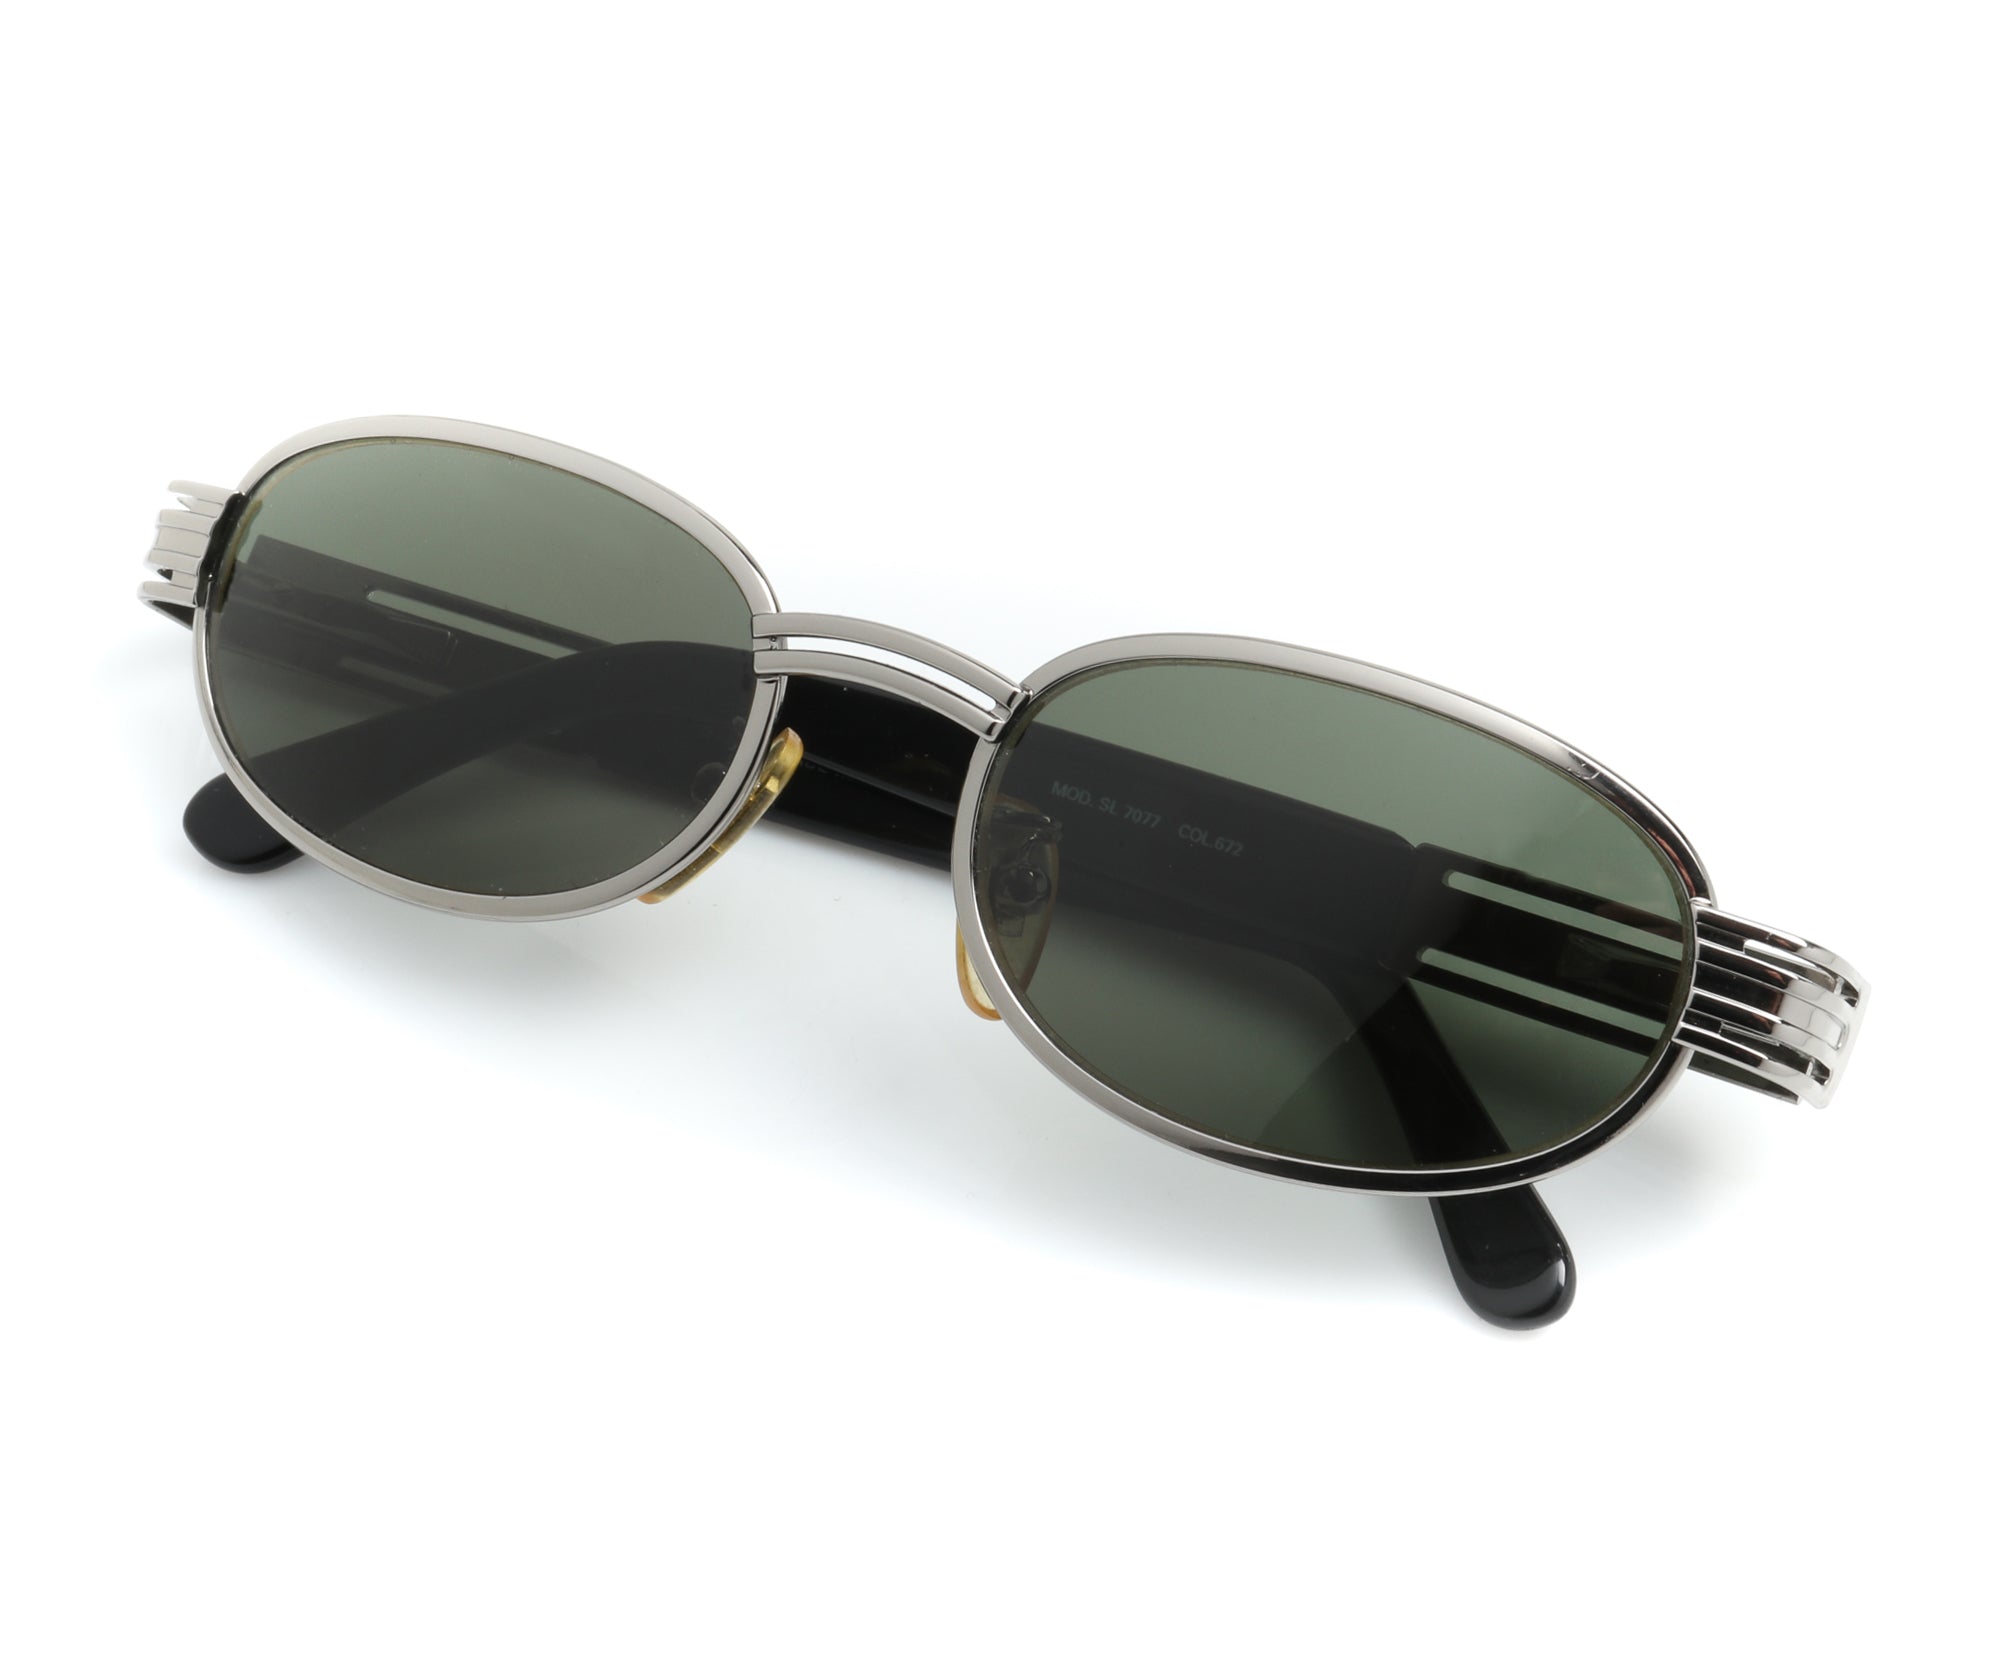 Fendi Sunglasses for Women, Model FS5357, Luxury Vintage